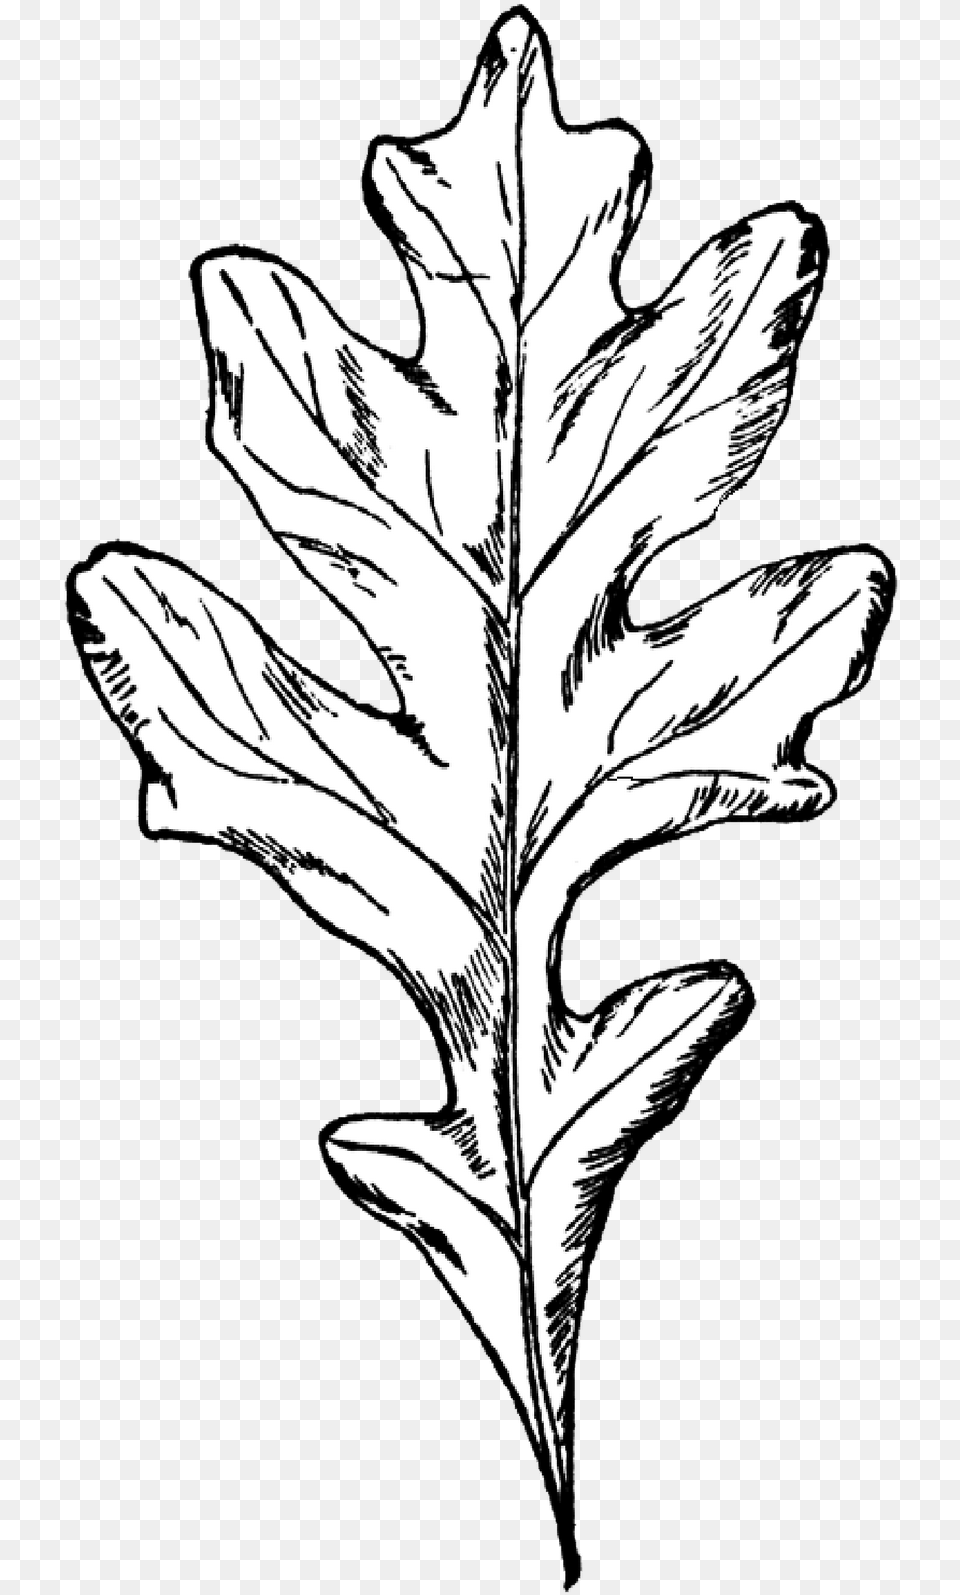 Digital Stamp Oak Leaf Black And White Oak Leaf, Plant, Person, Art, Drawing Png Image